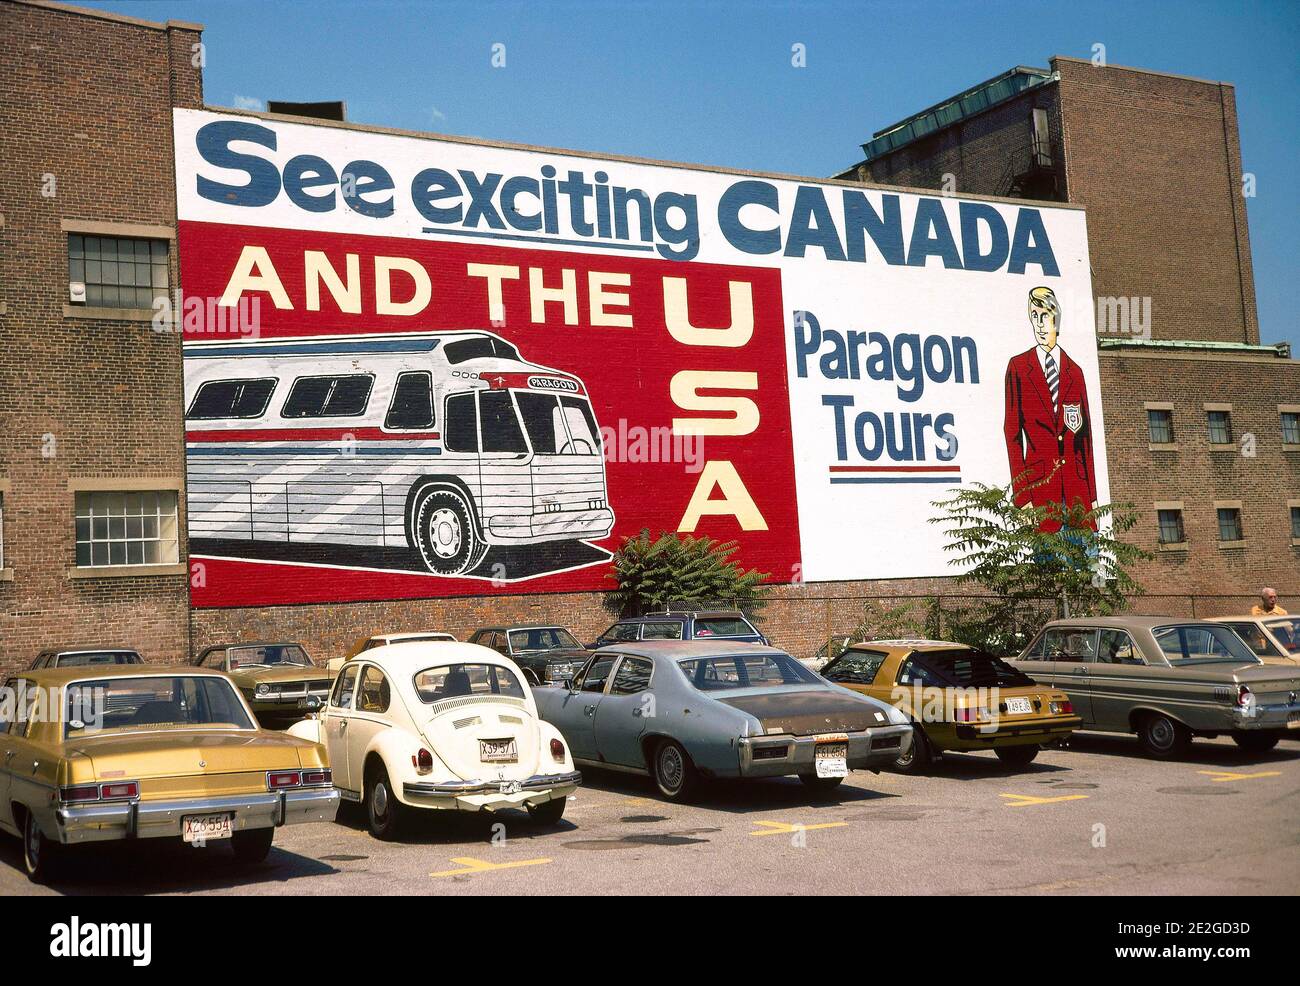 Stati Uniti, New York: Atmosfera in una strada del quartiere di Manhattan nel 1981. Paragon Tours Wall pubblicità: 'Vedere eccitante Canada e gli Stati Uniti Foto Stock